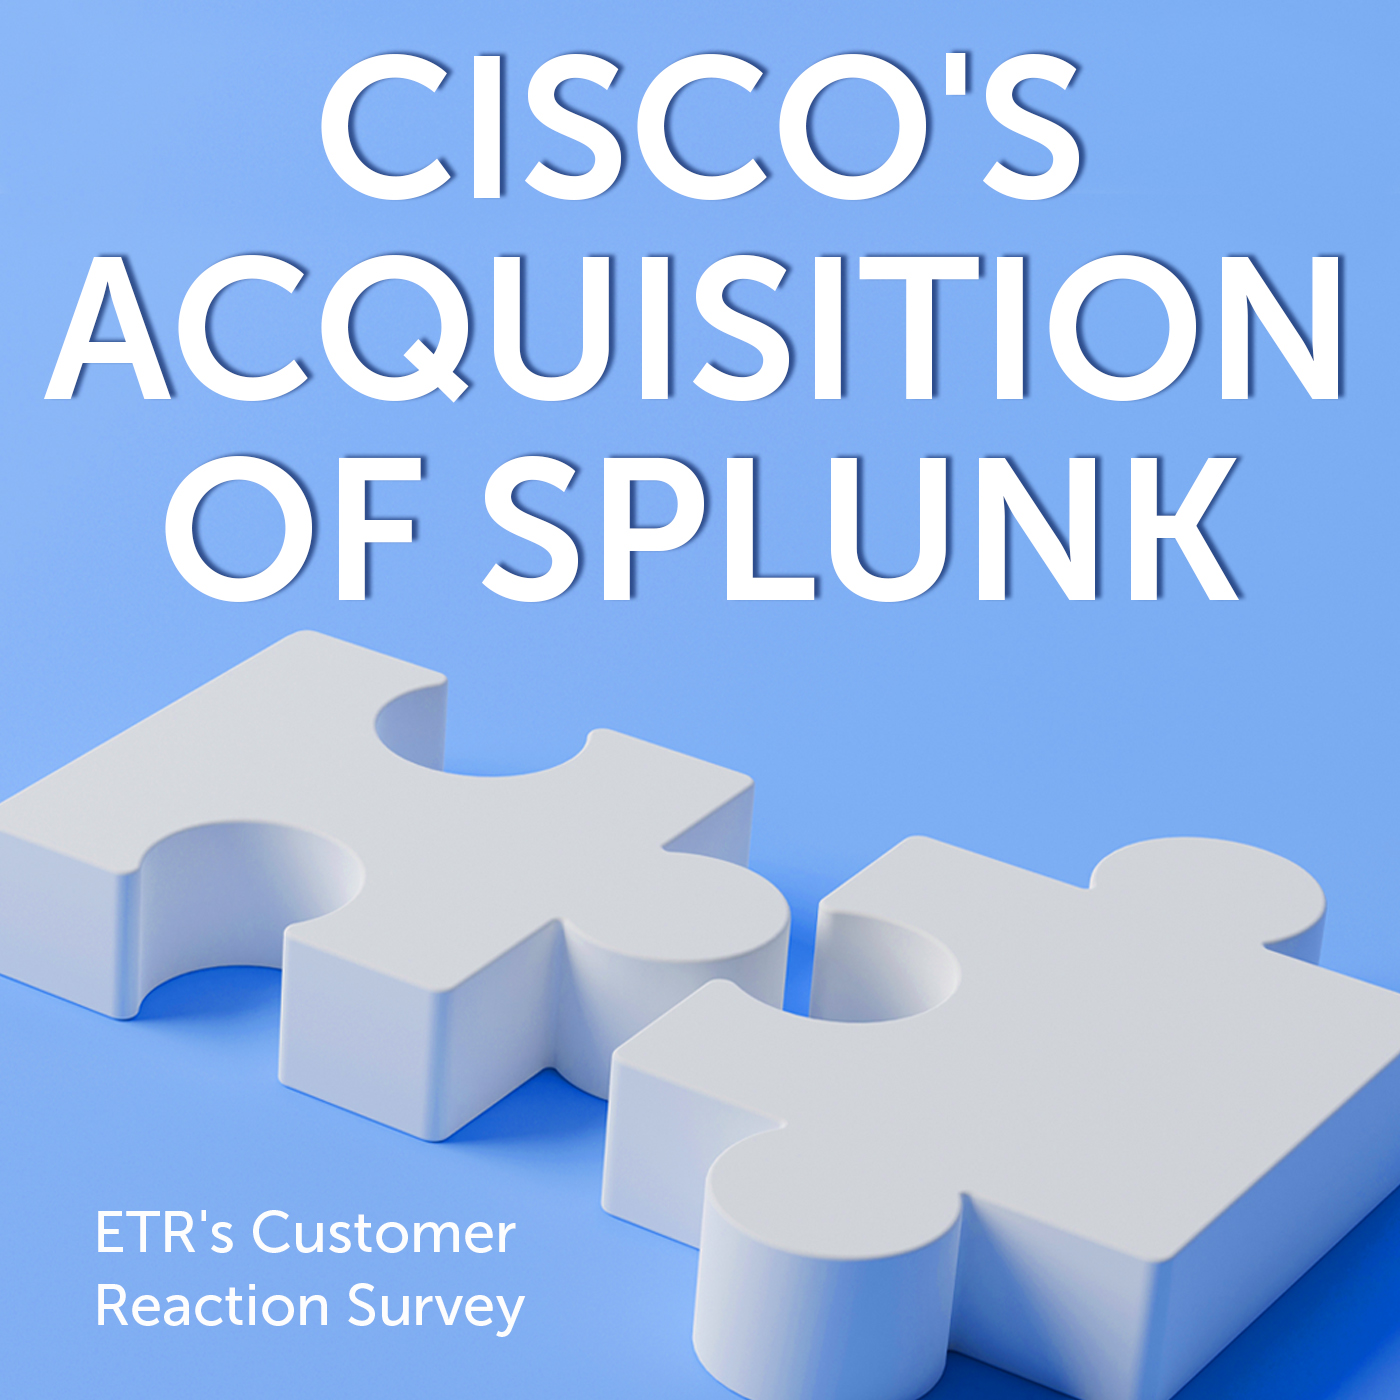 Headline art showing 2 puzzle pieces:Cisco's Acquisition of Splunk